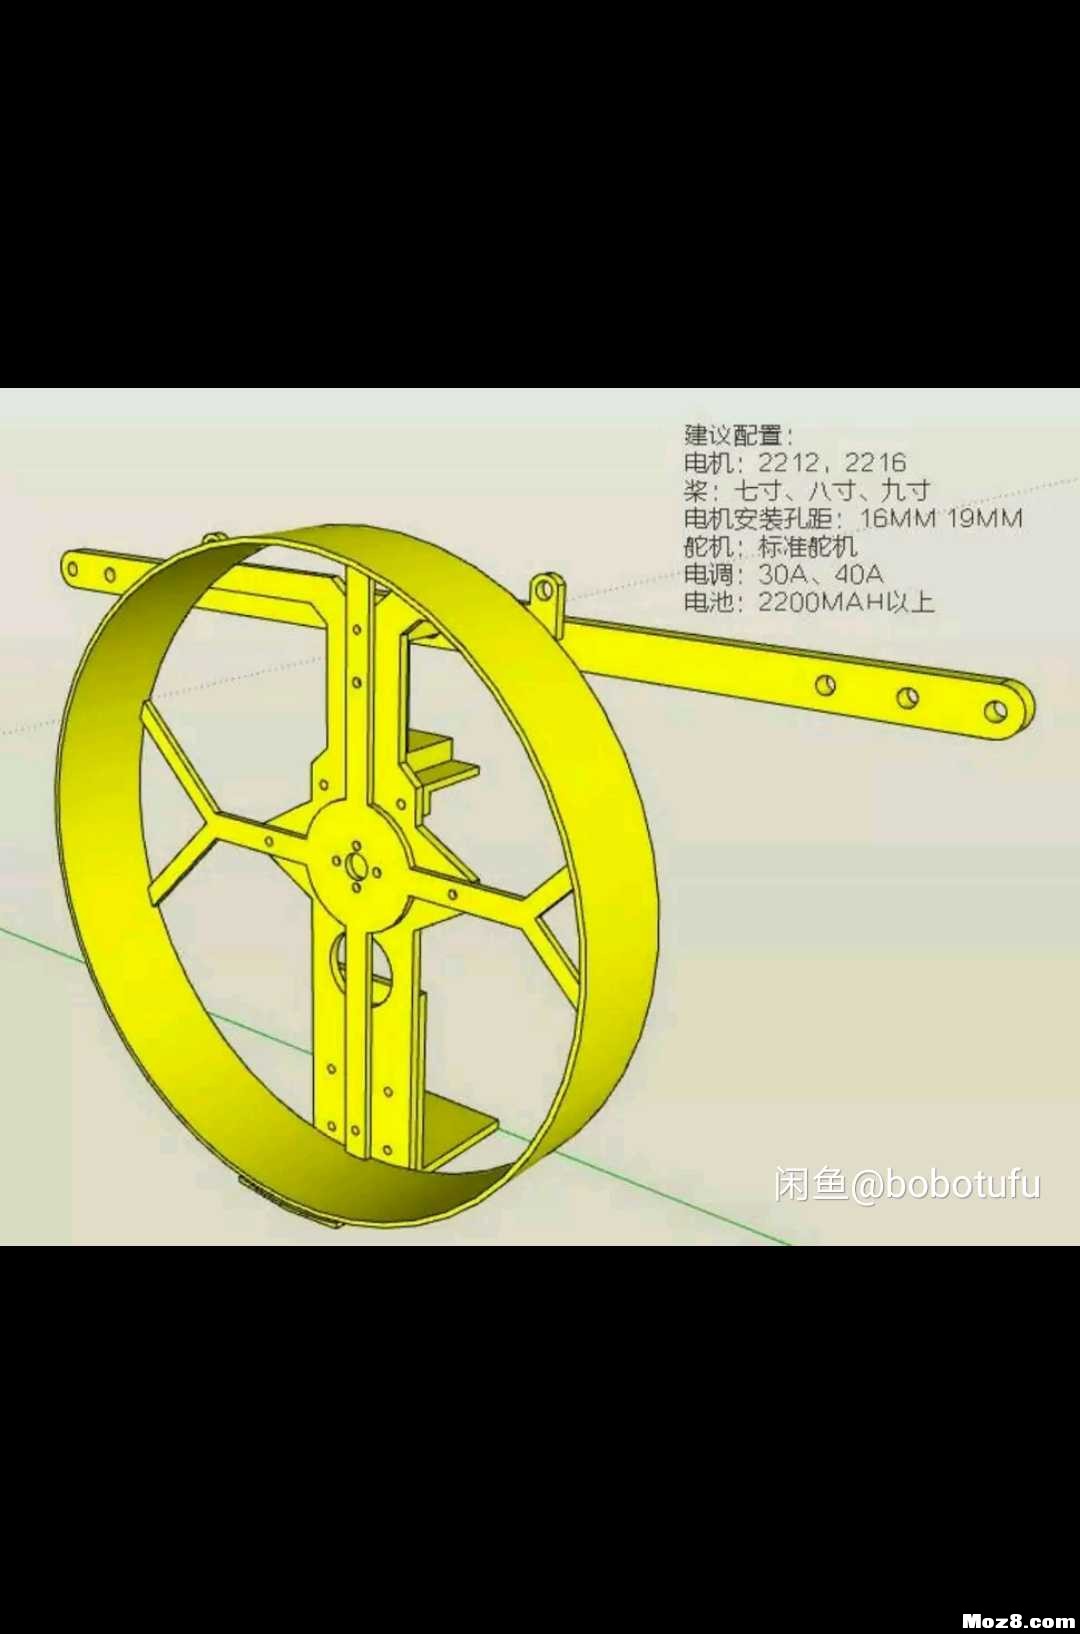 遥控动力伞 3D机架重画 模型,固定翼,舵机,电调,电机 作者:bobotufu 9570 